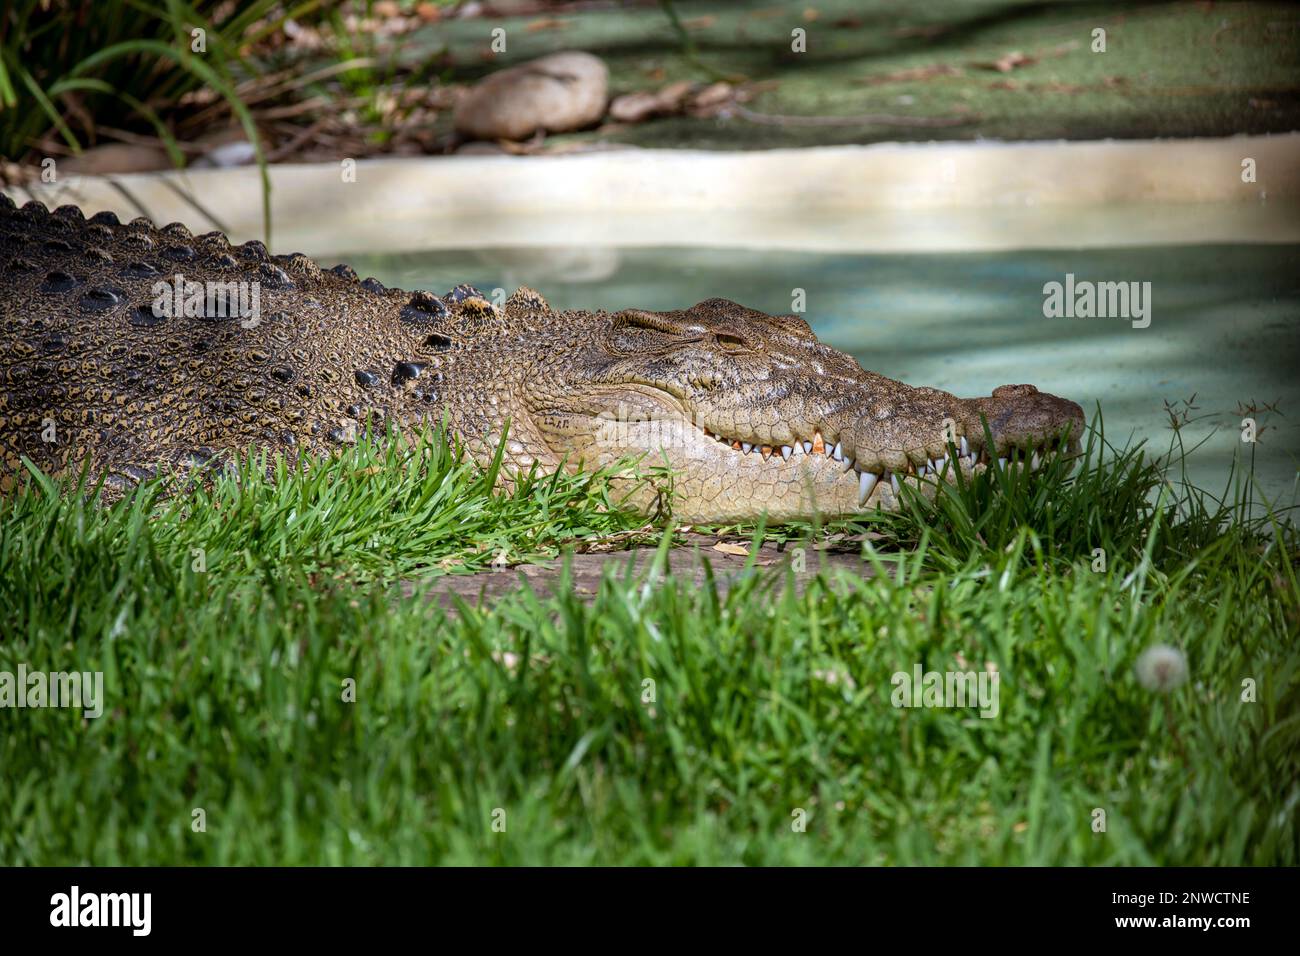 Crocodile d'eau salée (Crocodylus porosus) reposant dans un parc animalier de Sydney, Nouvelle-Galles du Sud Australie (photo de Tara Chand Malhotra) Banque D'Images